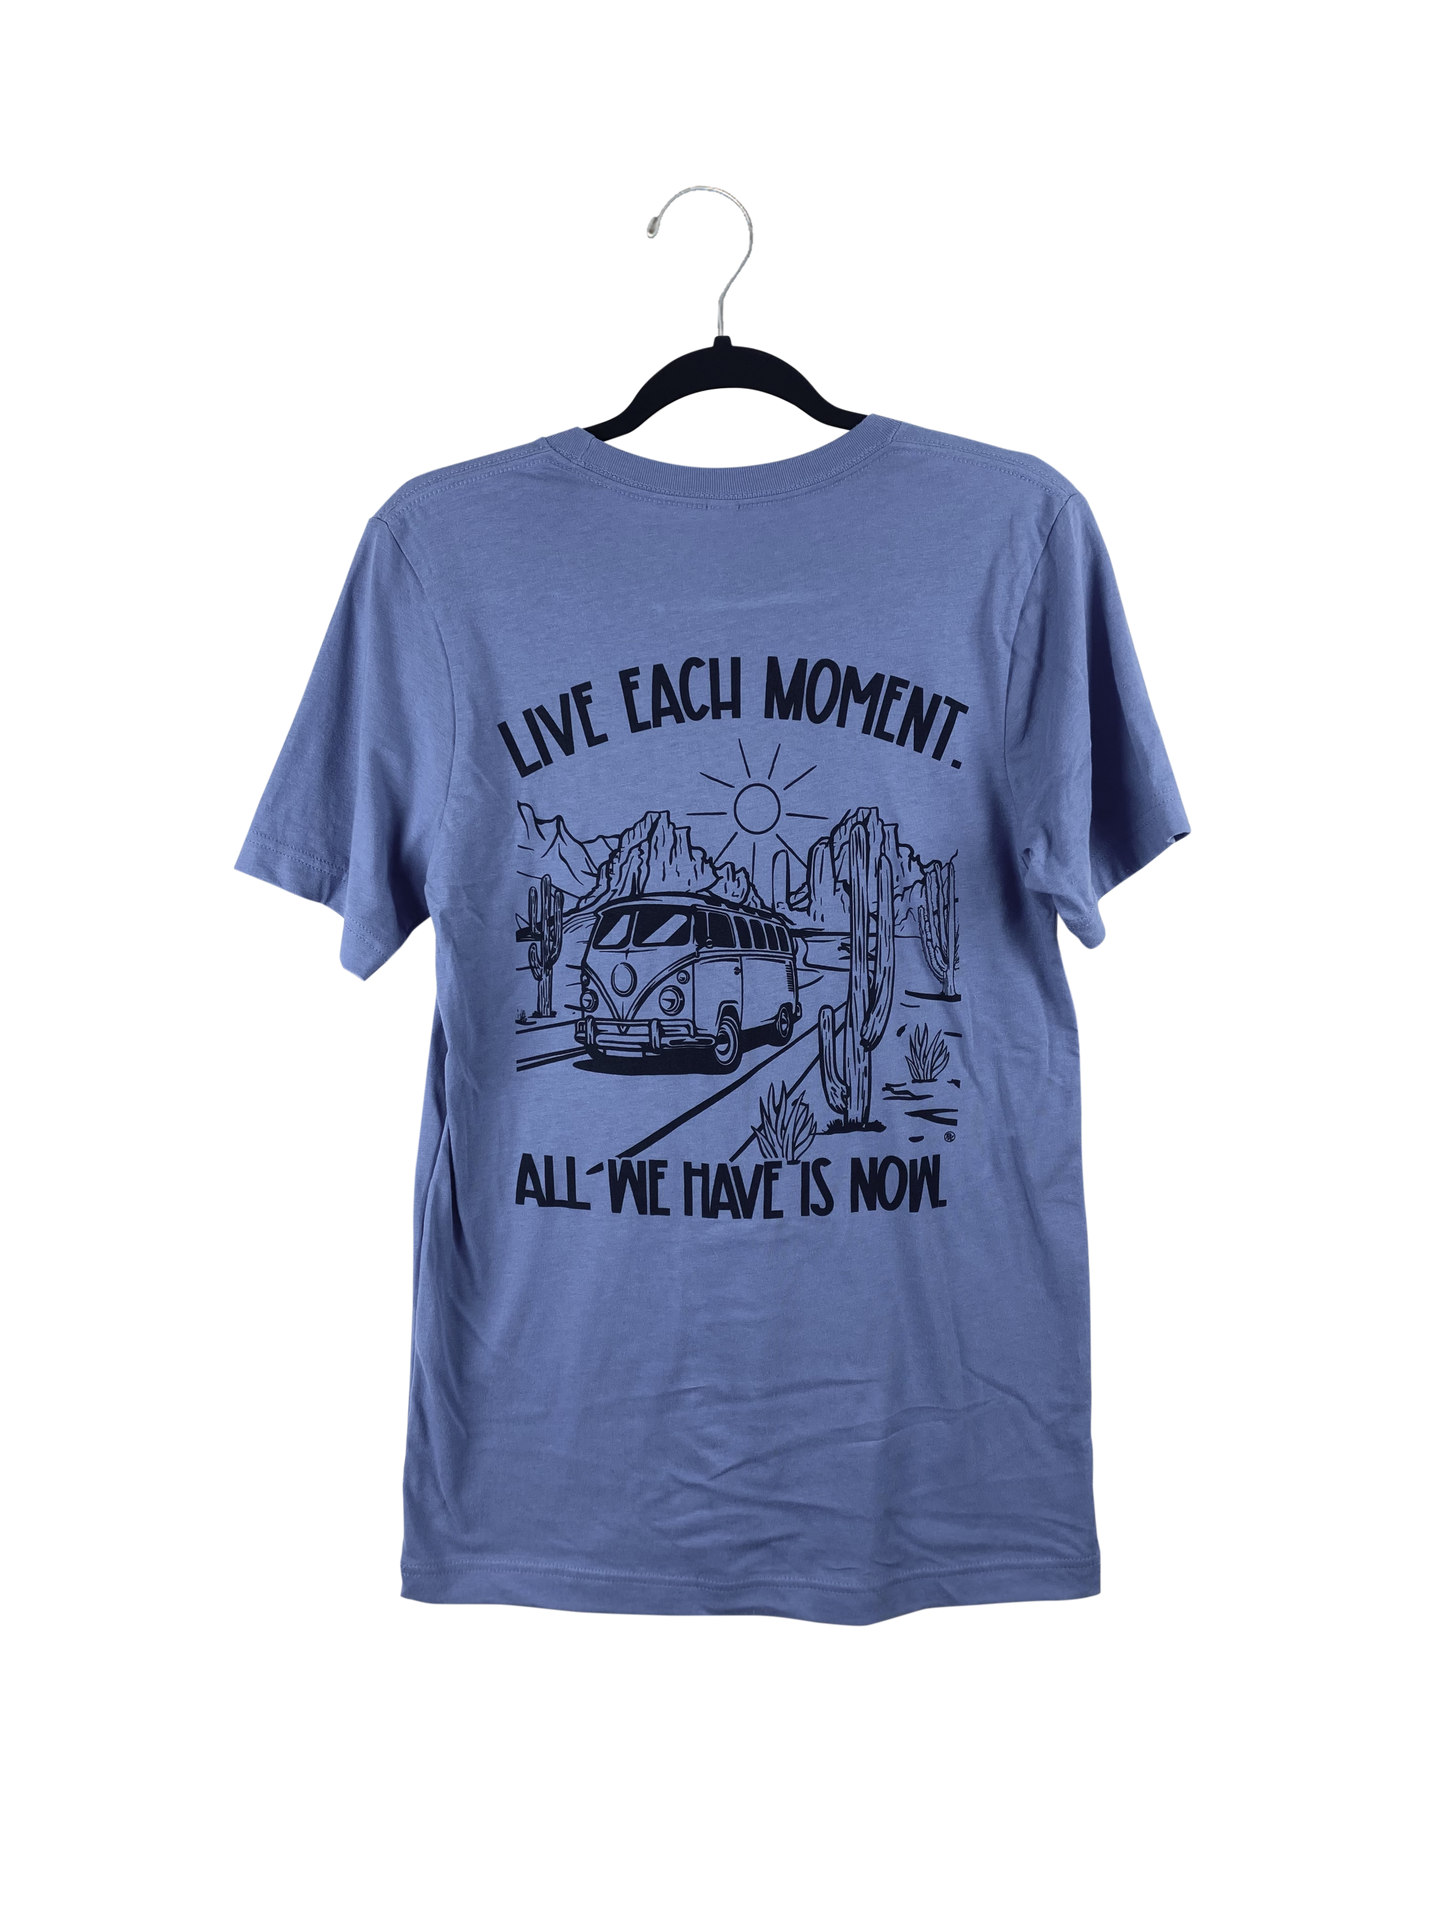 Life Each Moment - Lavender Blue - Unisex T-Shirt